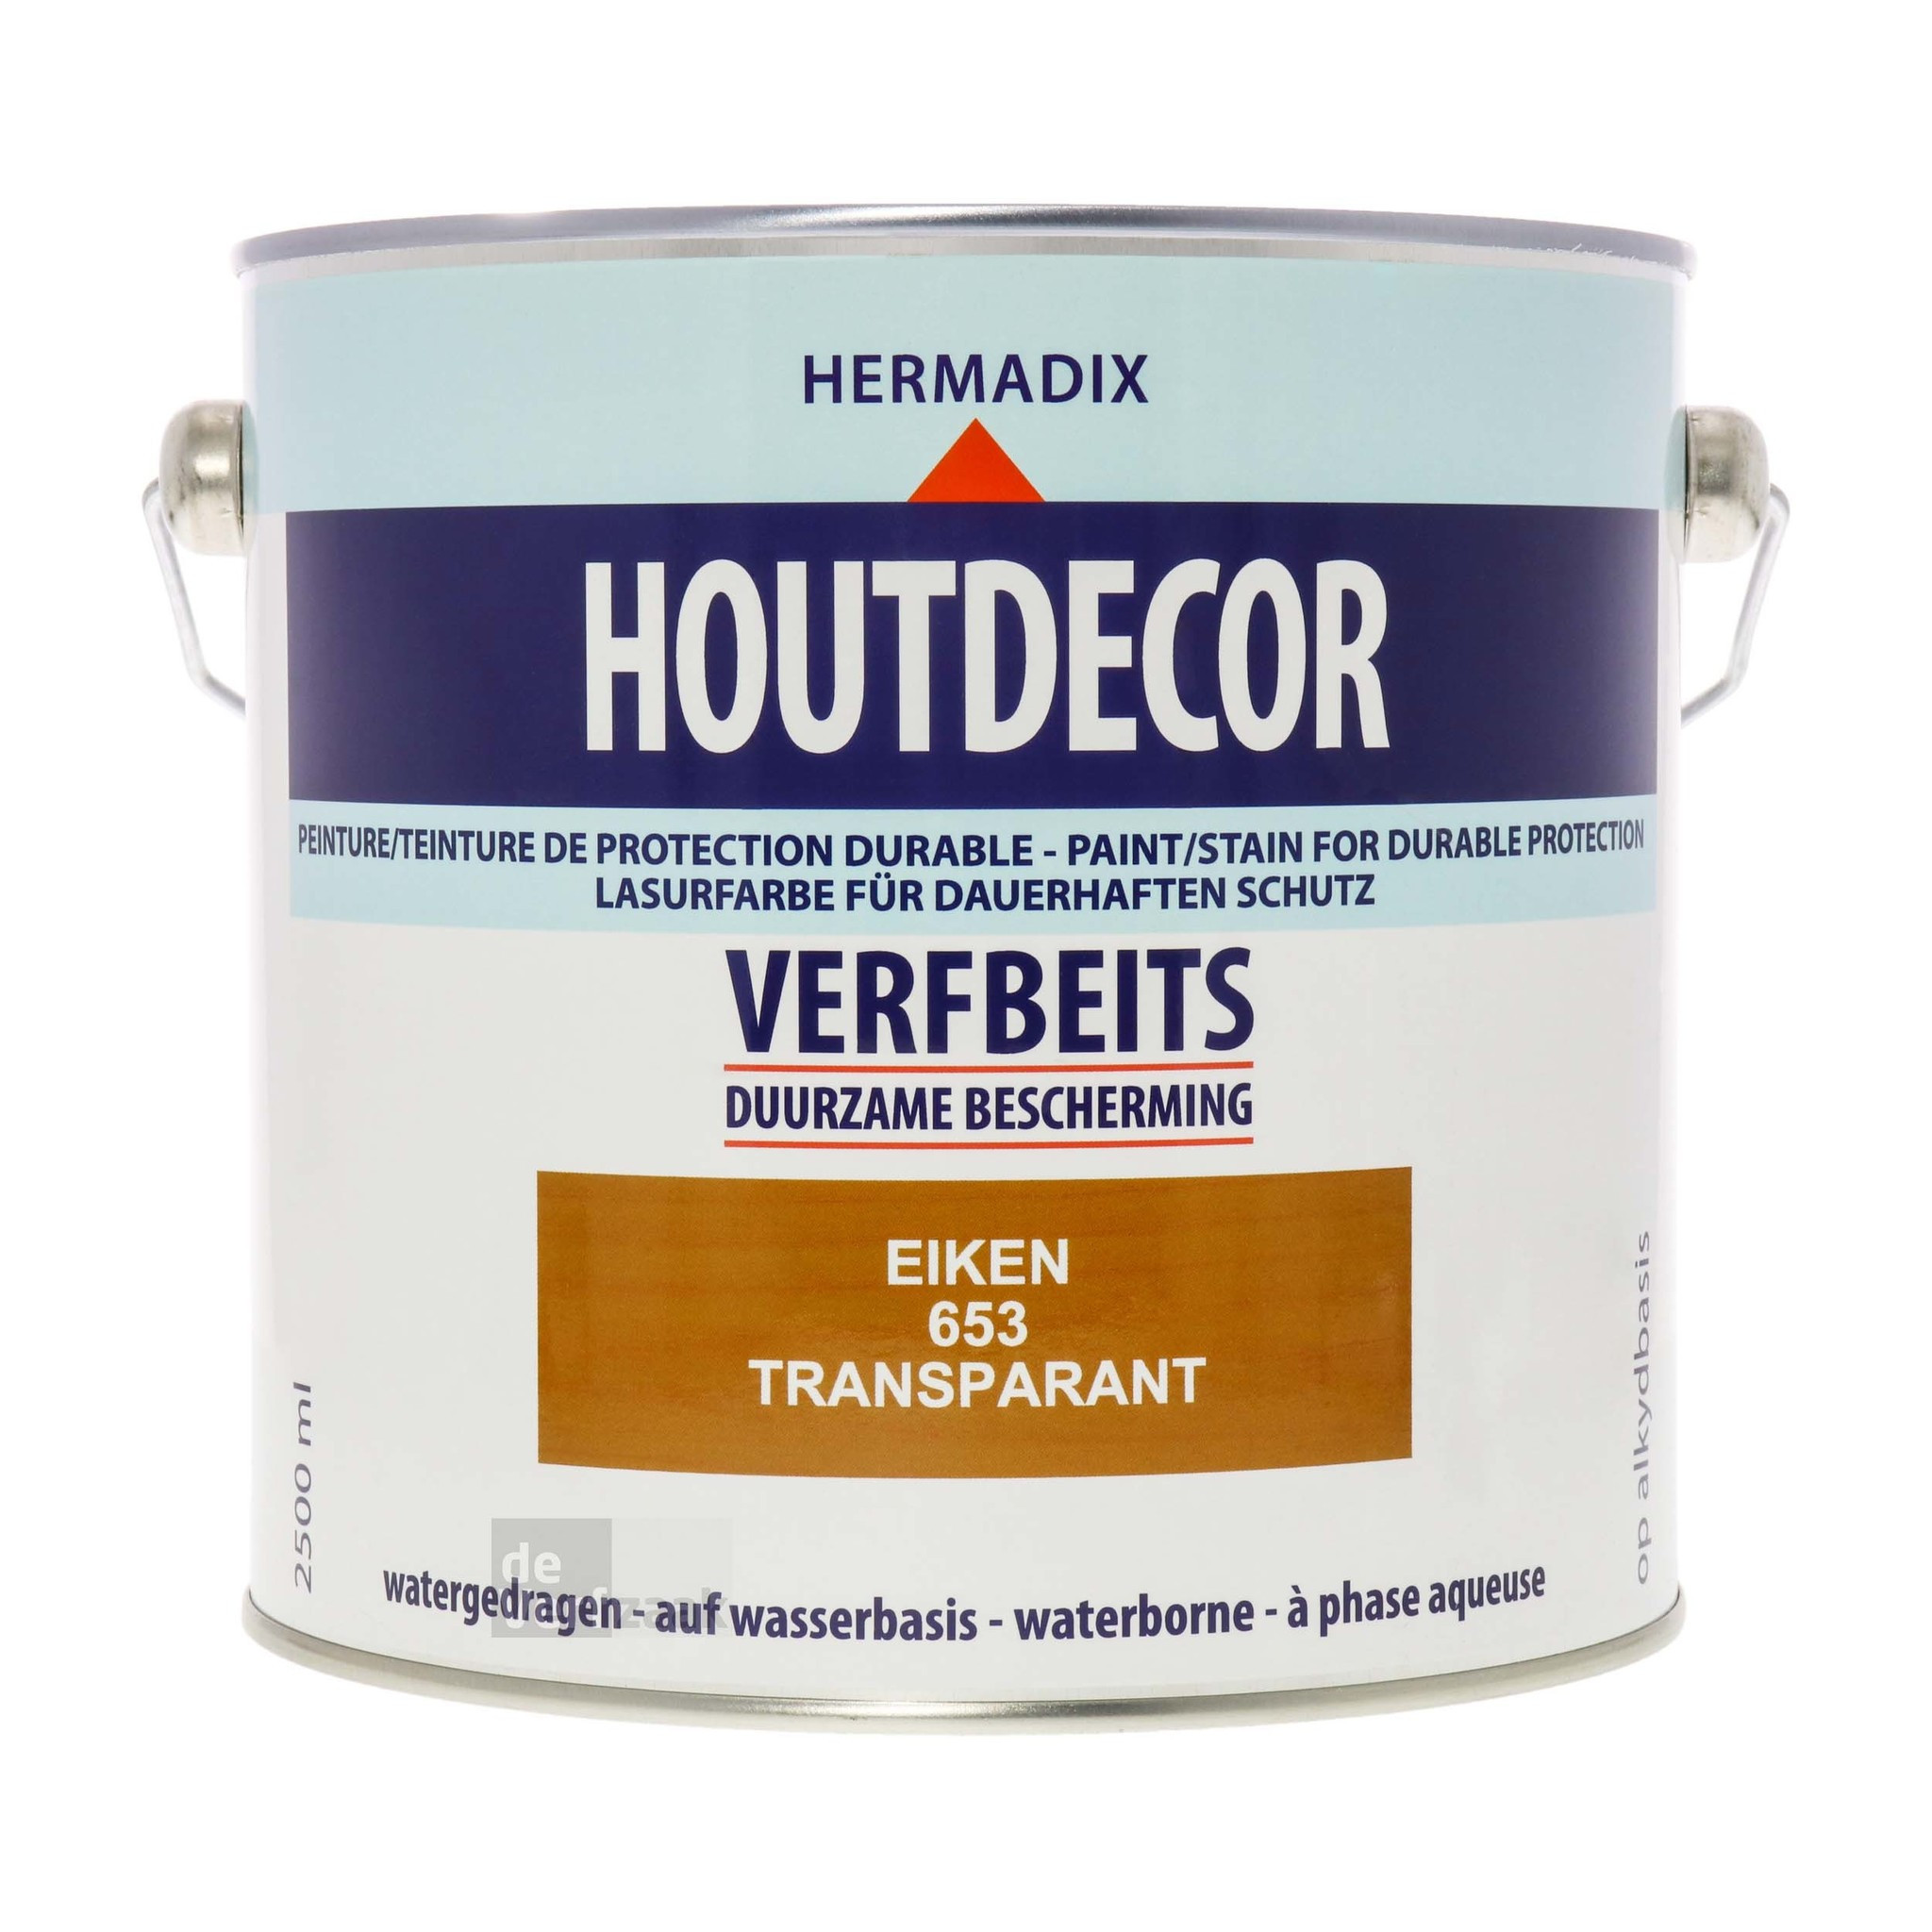 Hermadix Houtdecor Verfbeits - 2,5 liter